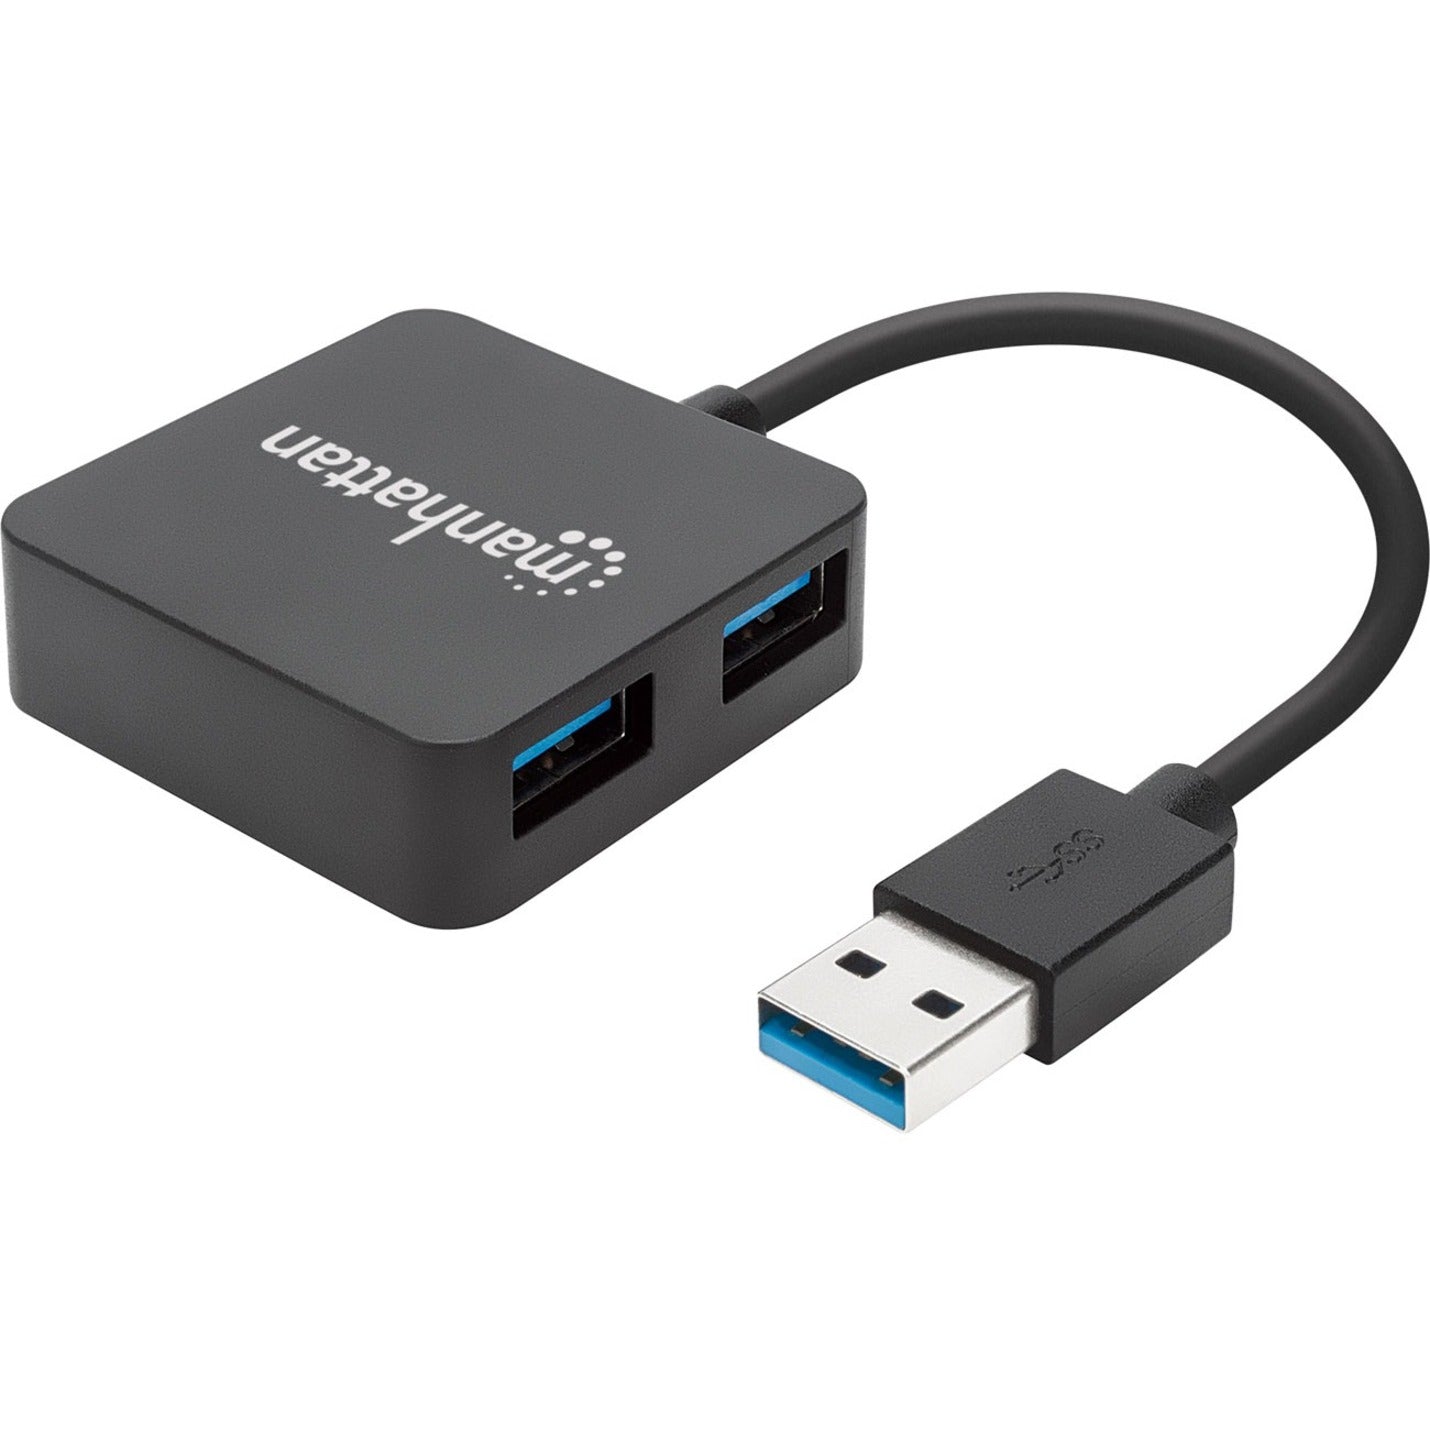 Manhattan 162296 SuperSpeed USB 3.0 Hub, 4 USB Ports, Mac/PC Compatible